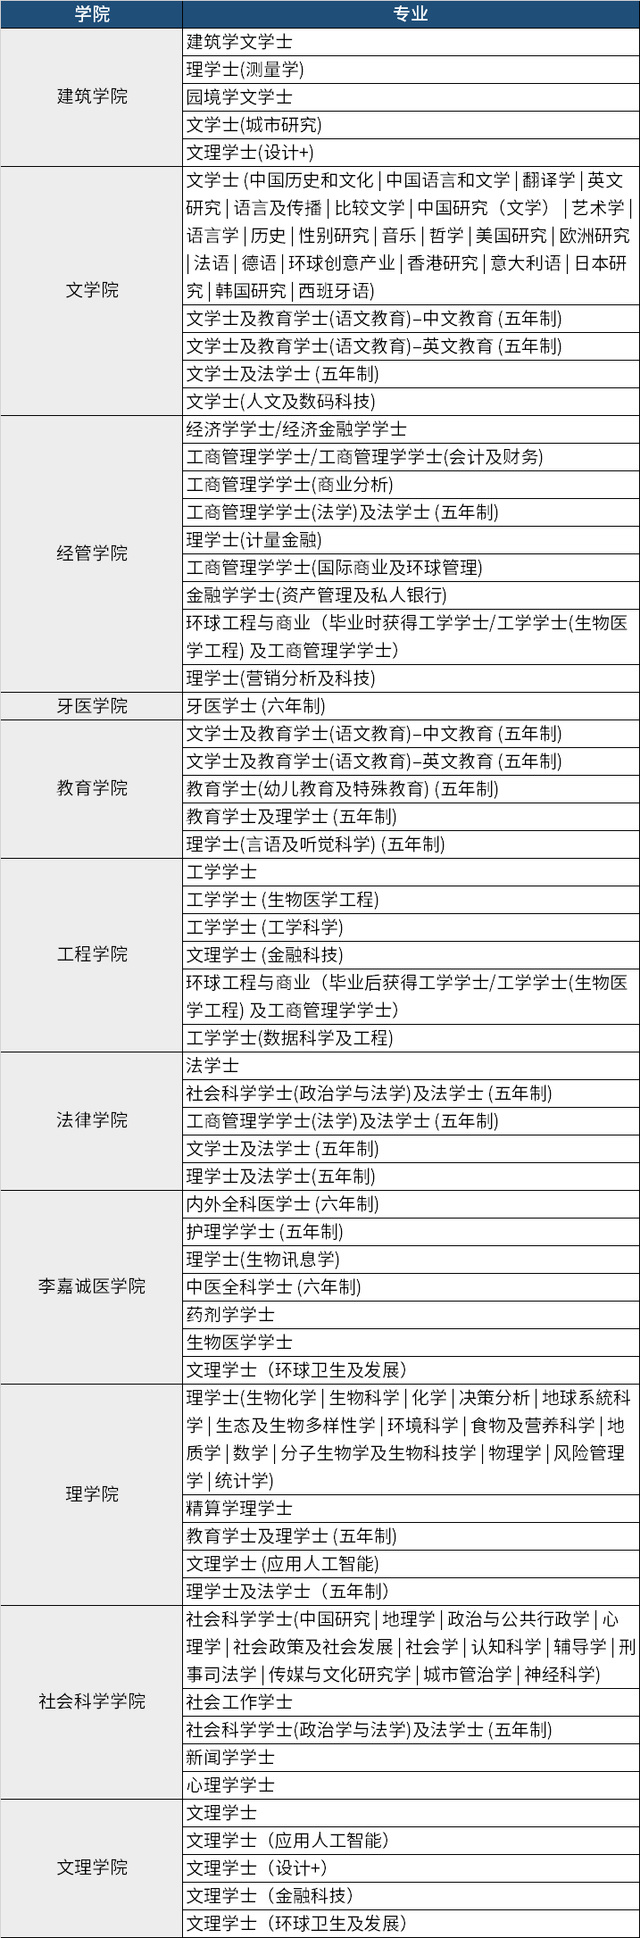 香港八高校2022/23年本科入学申请方式招生计划截止时间